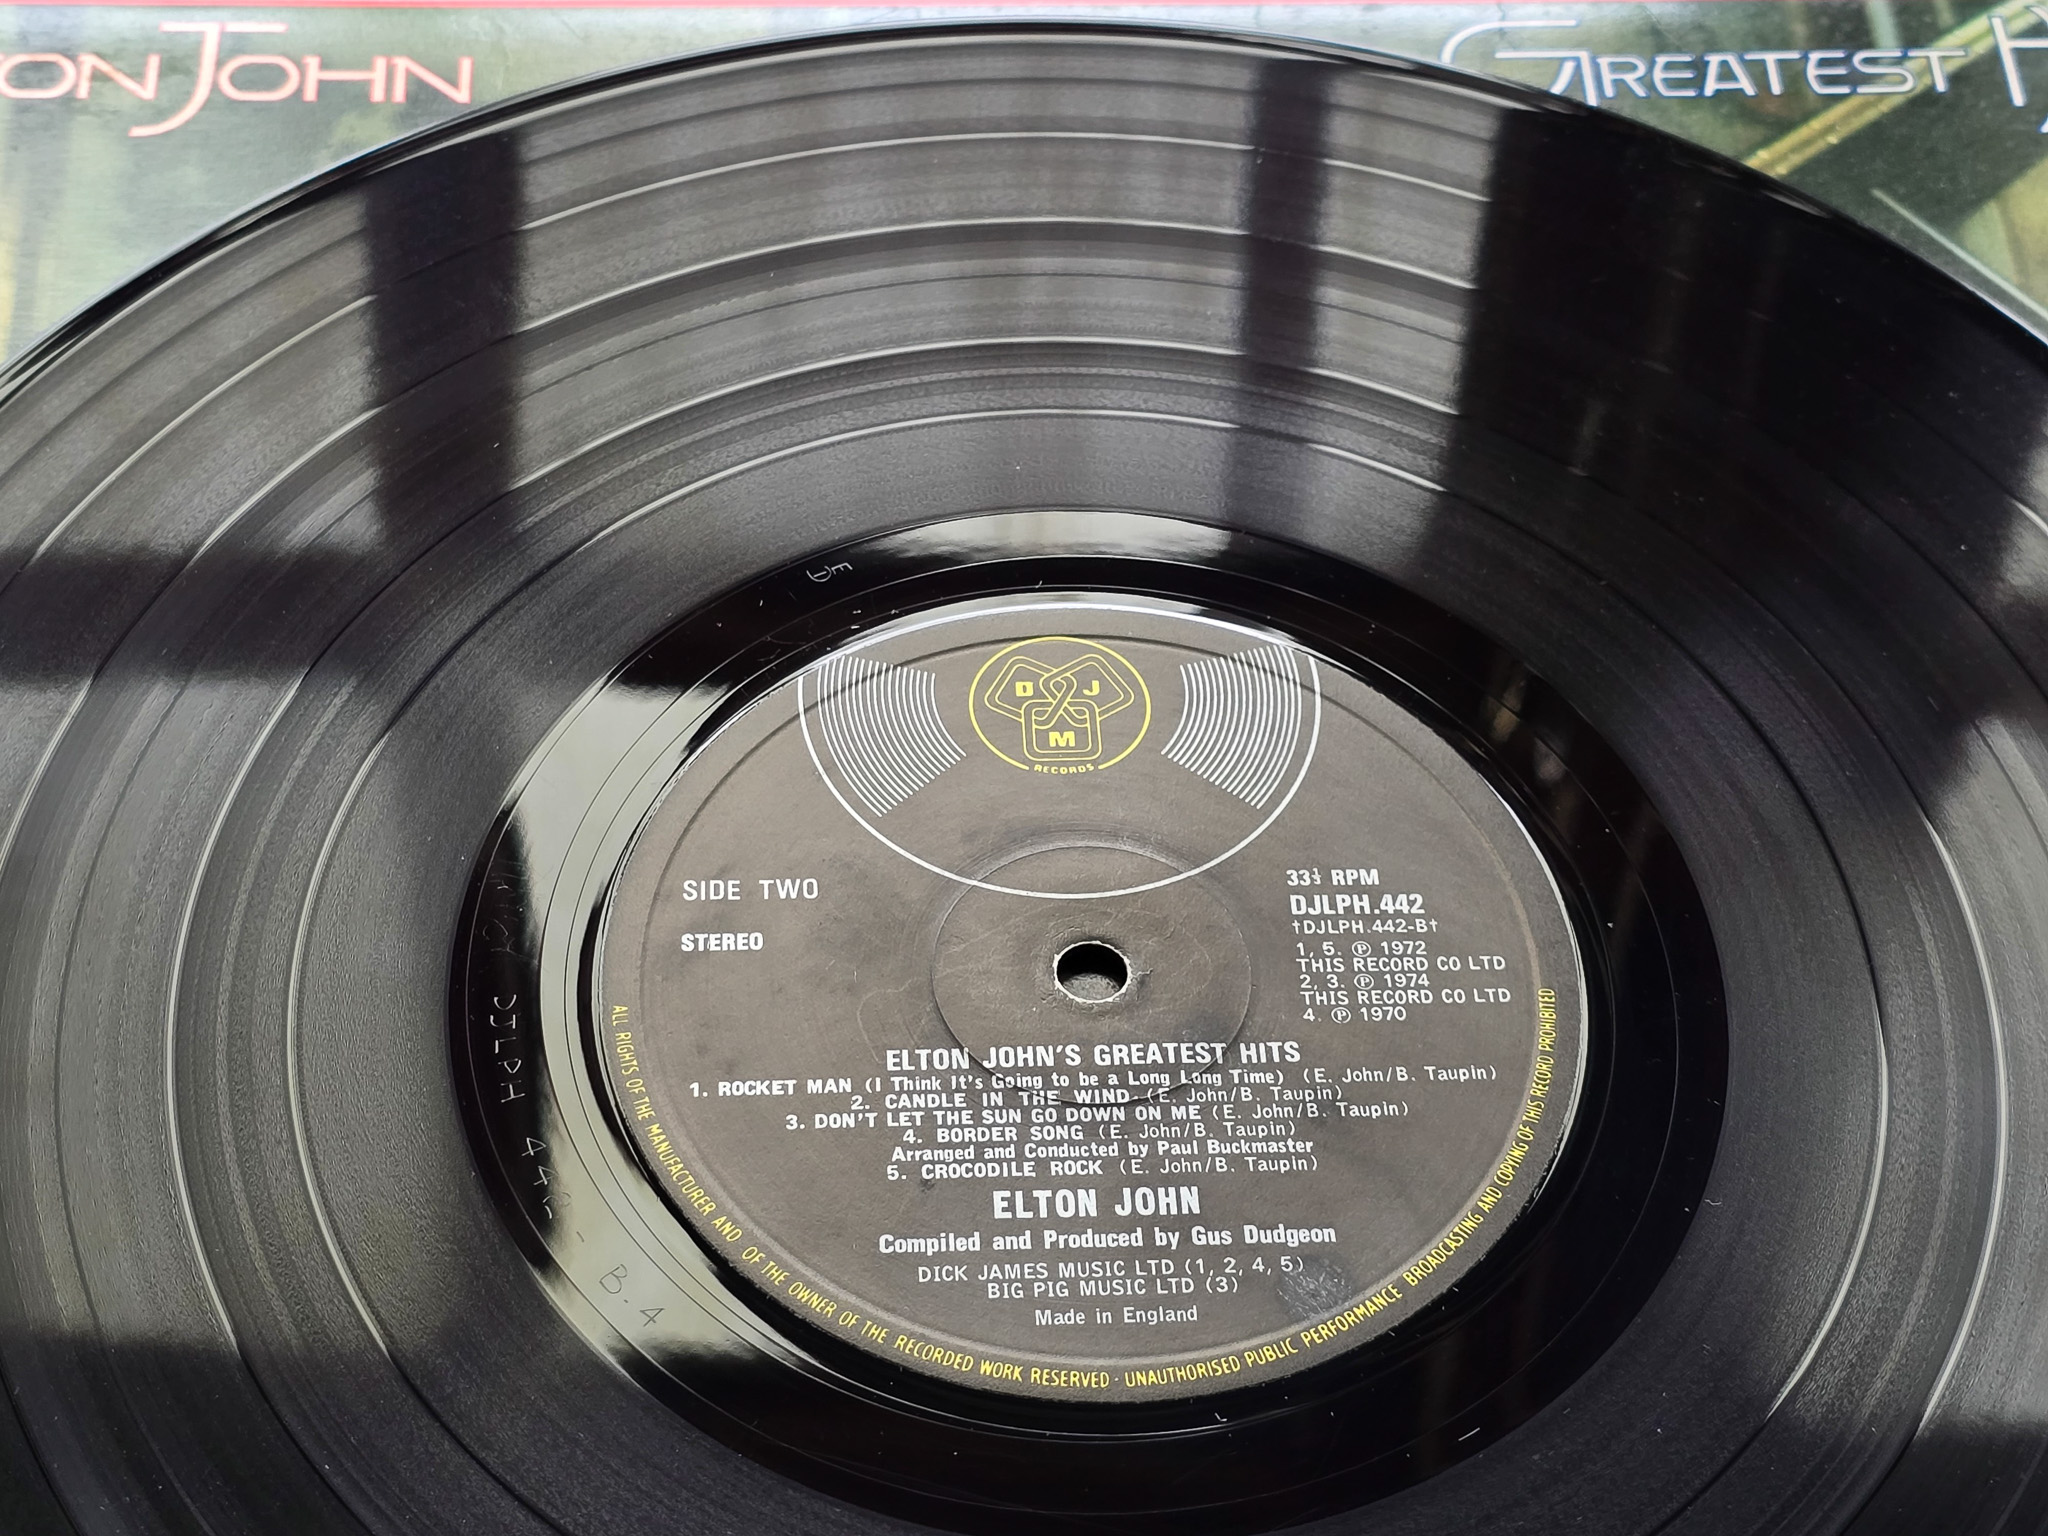 Elton John – Greatest Hits Red Splatter UK 1st issue vinyl LP - Image 9 of 9